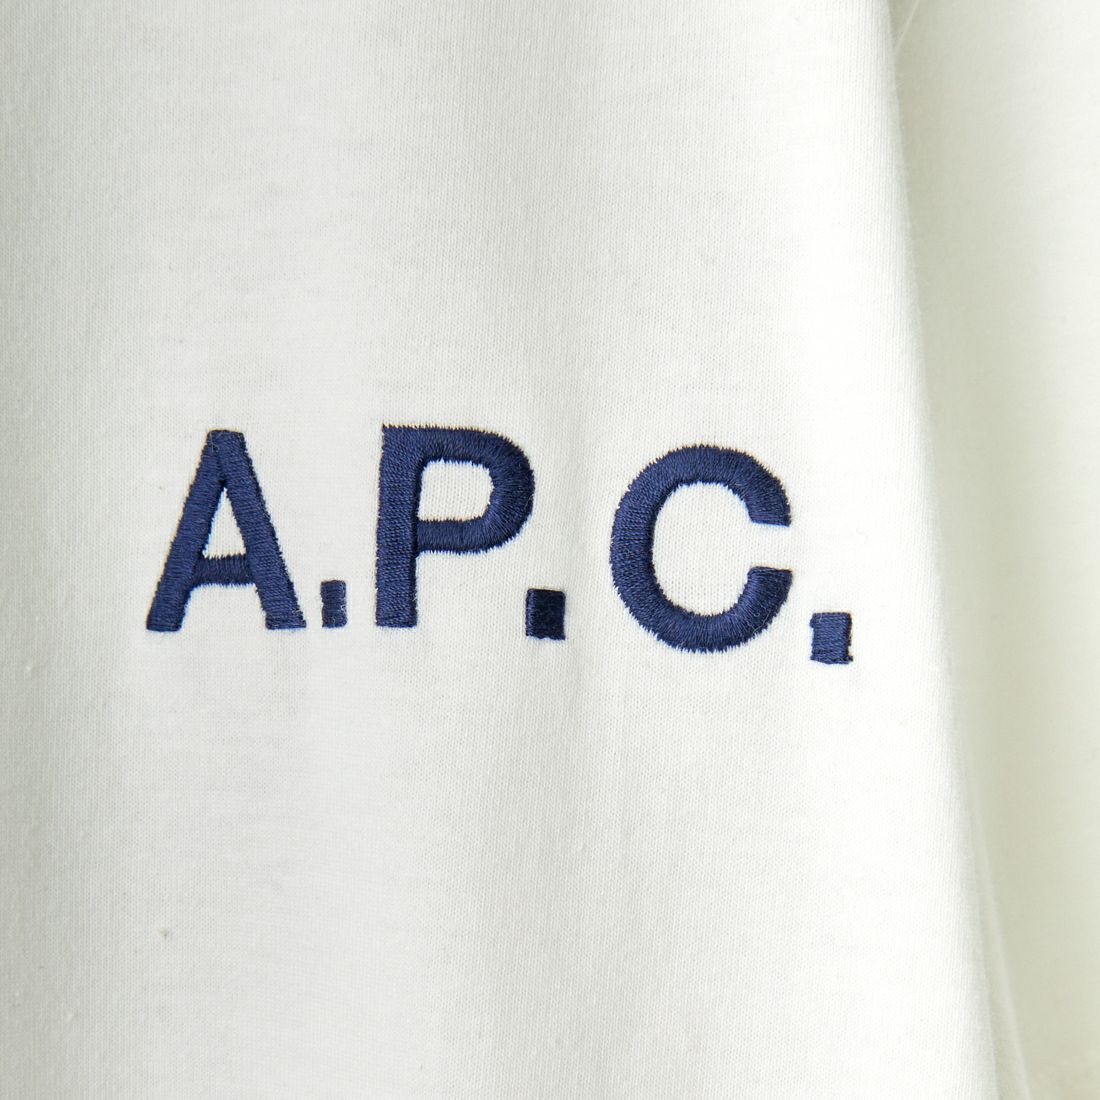 A.P.C. [アー・ペー・セー] 別注 ロゴ刺繍Tシャツ [BRODE-LOGO-JF] BLANC